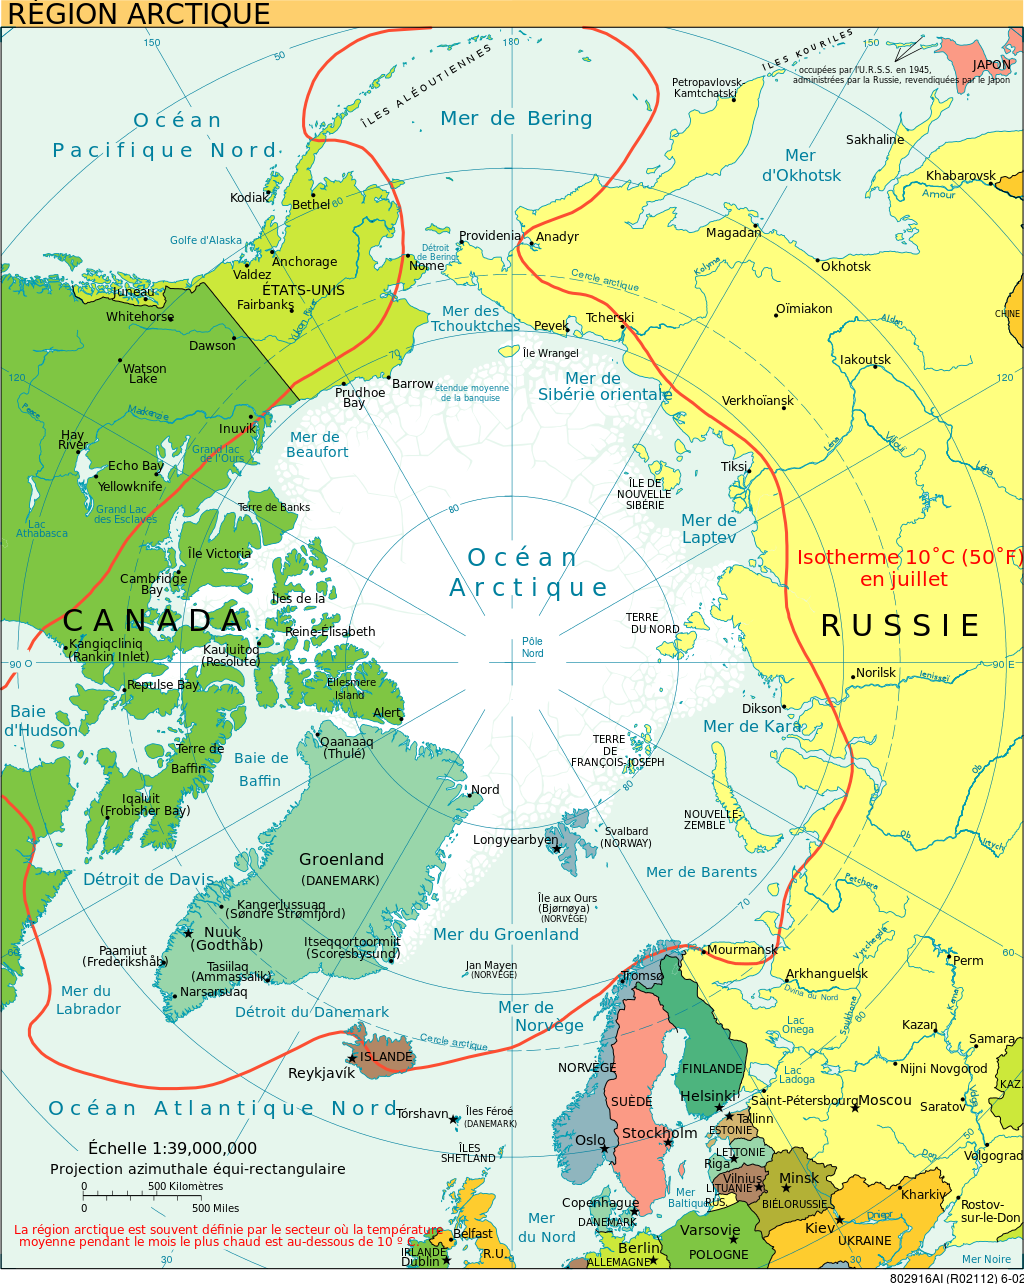 Cartographie de l'Arctique (domaine public)